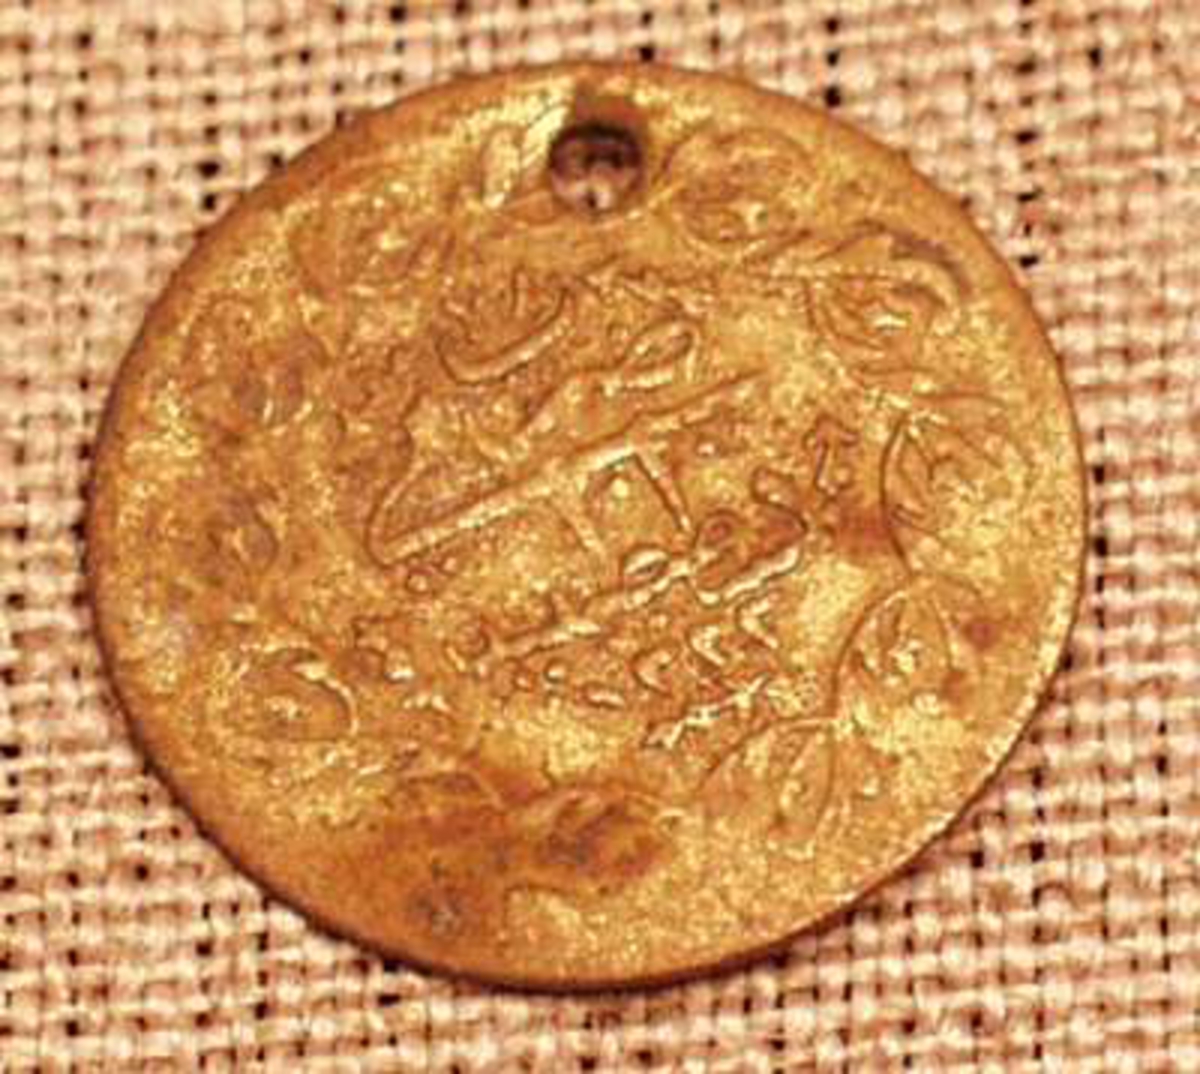   Orientalsk mynt med hull